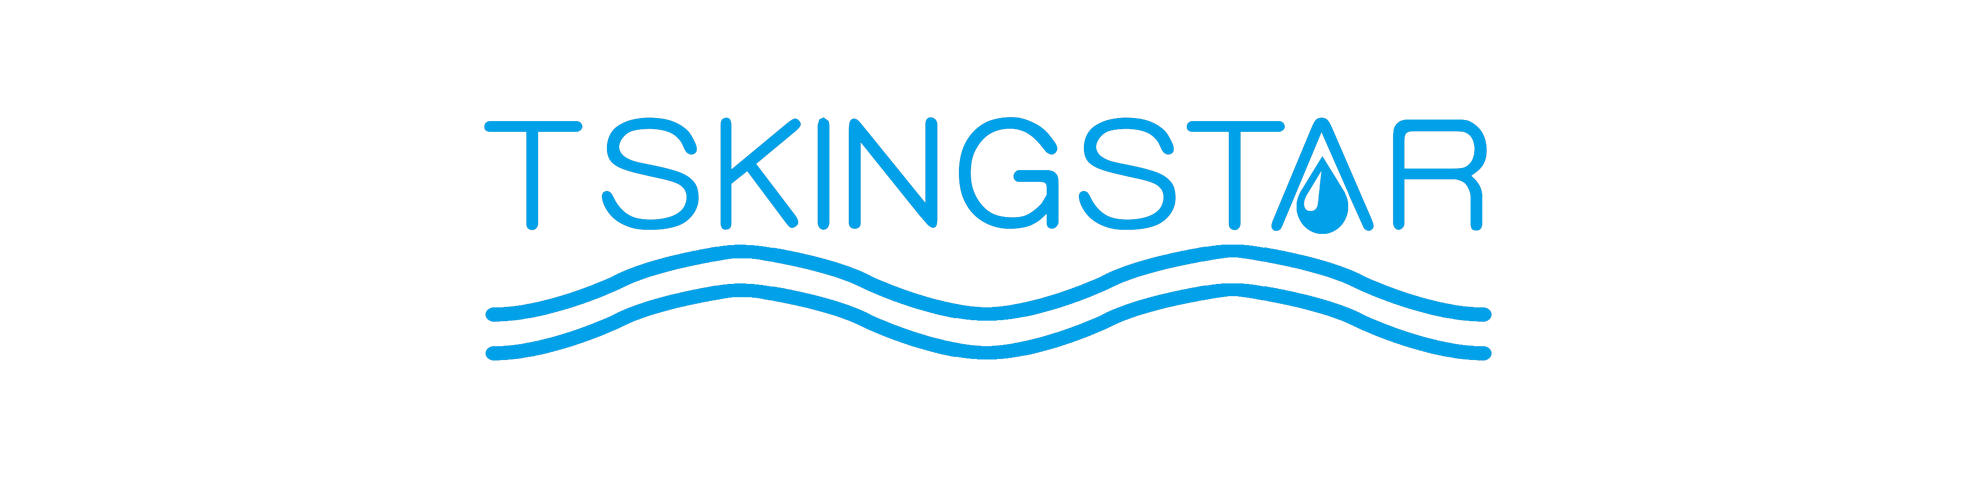 Kingstar Website